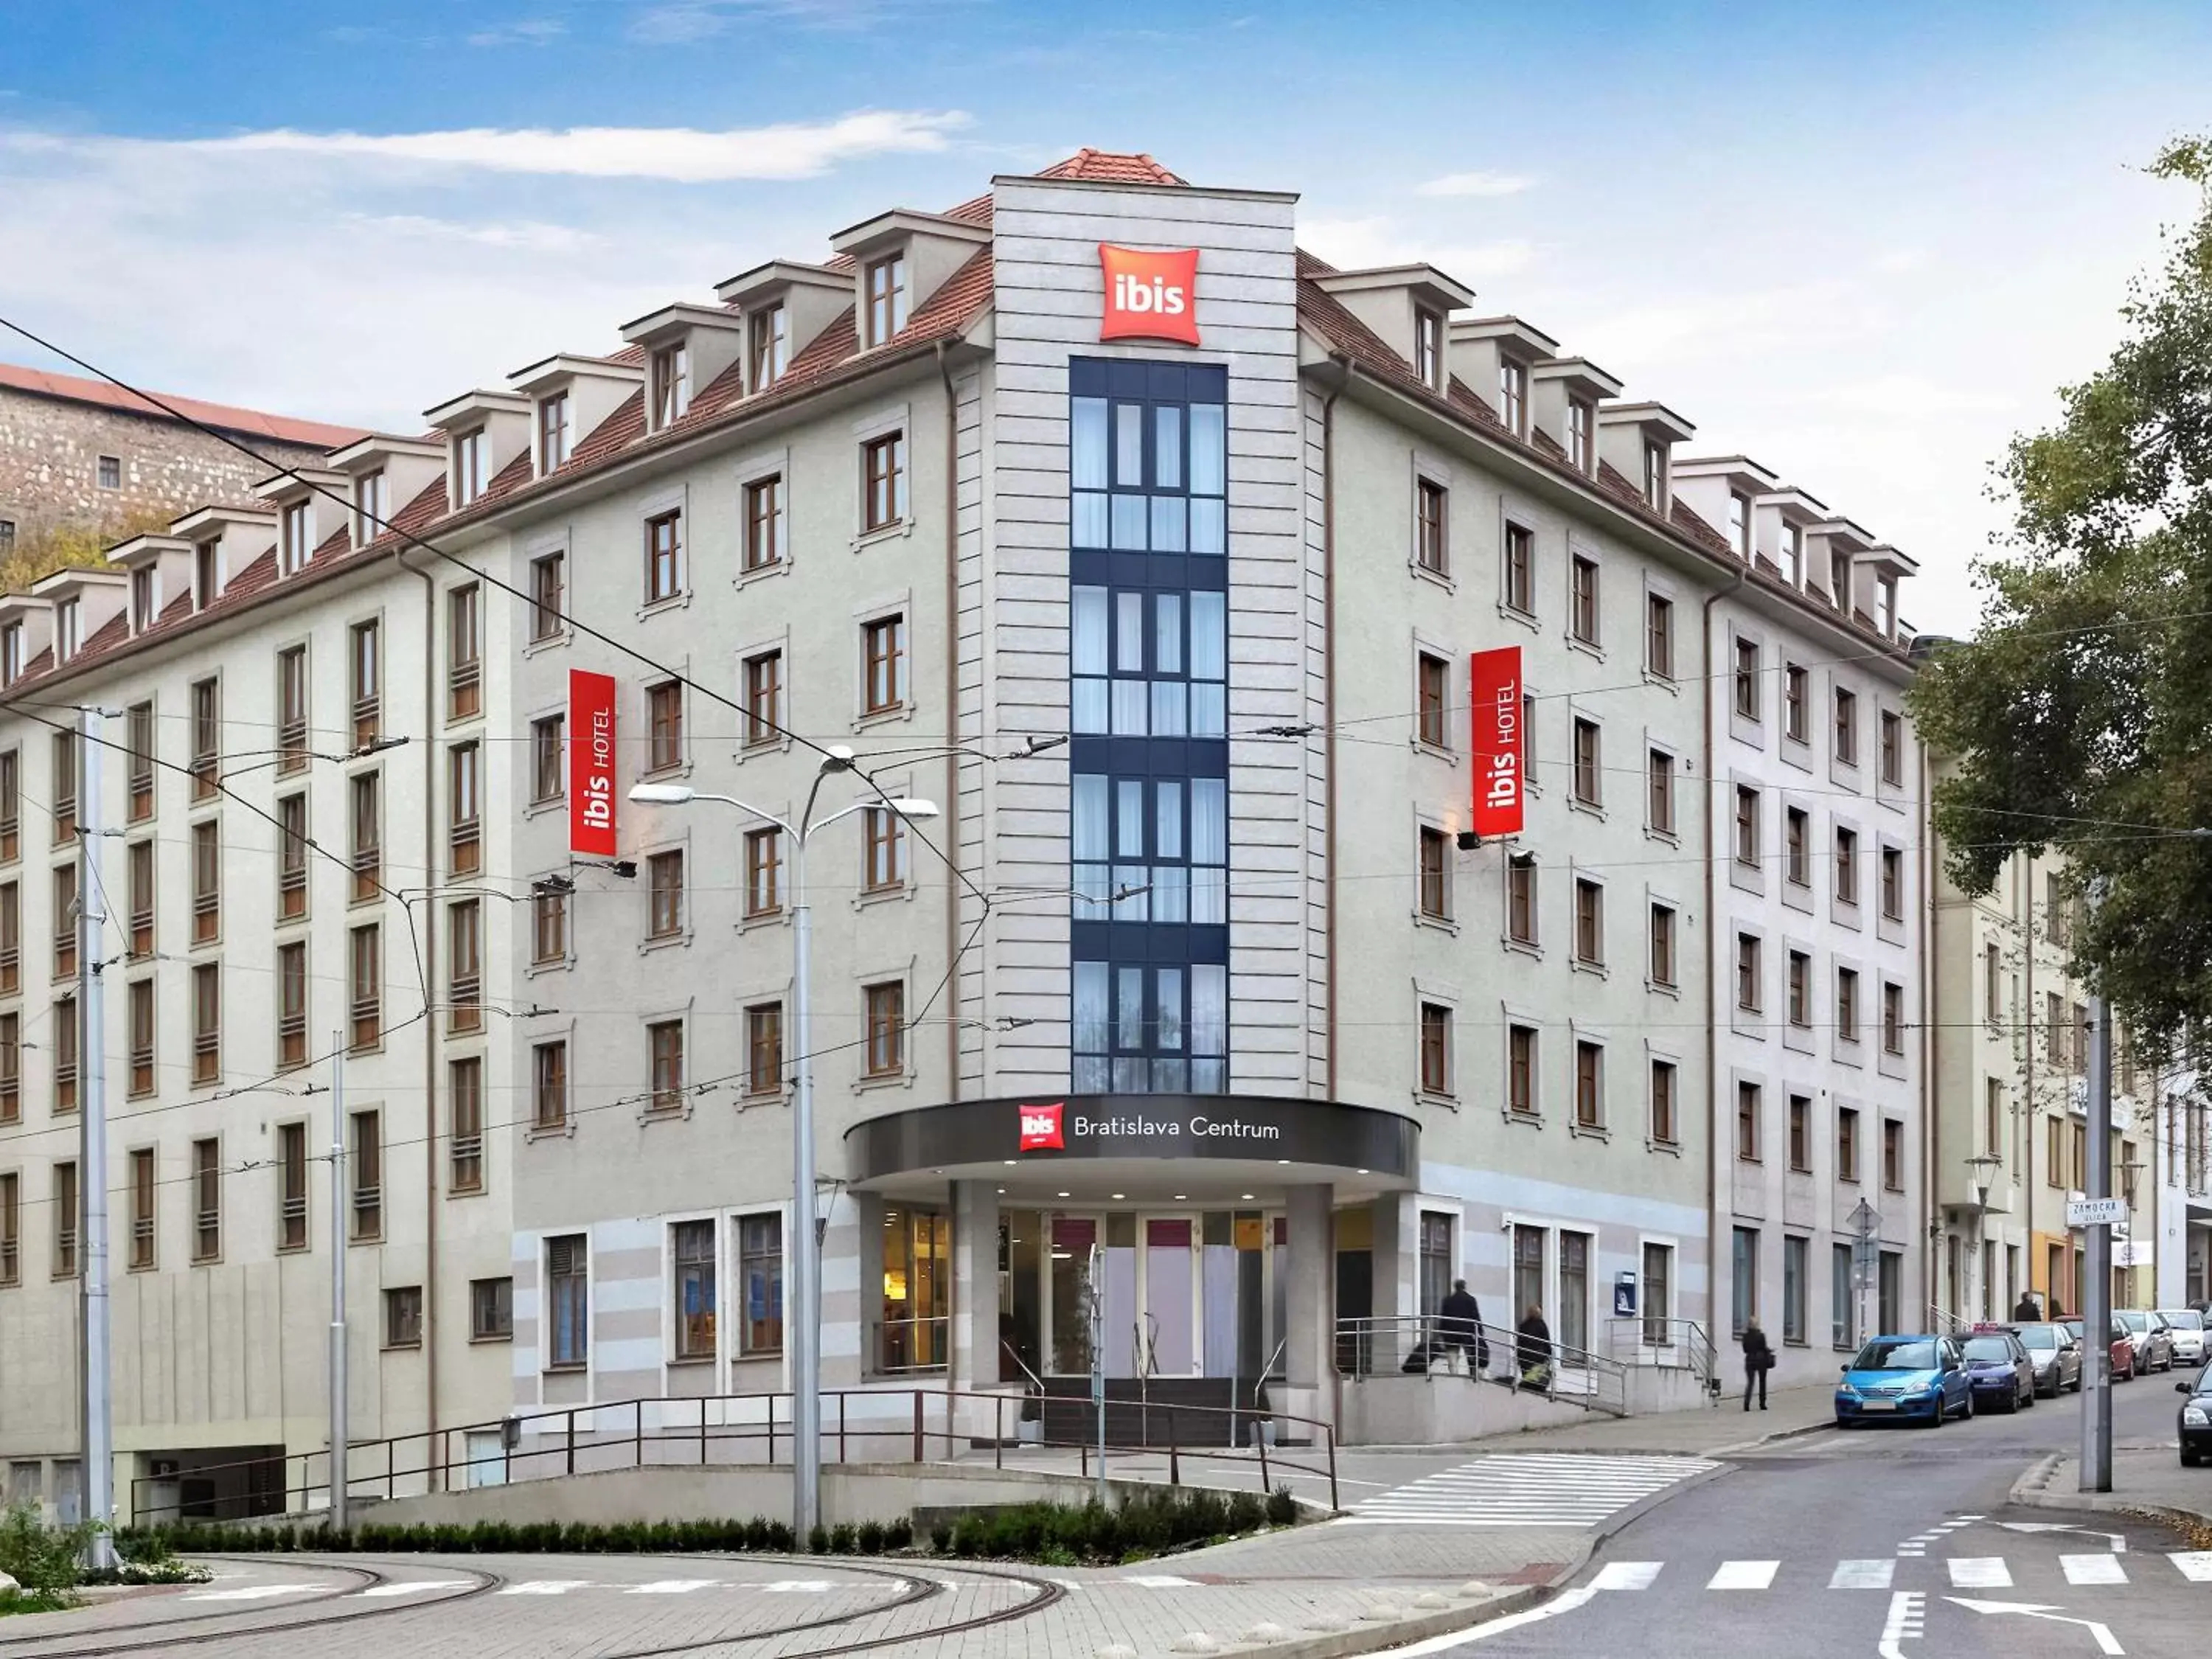 Property building in Ibis Bratislava Centrum